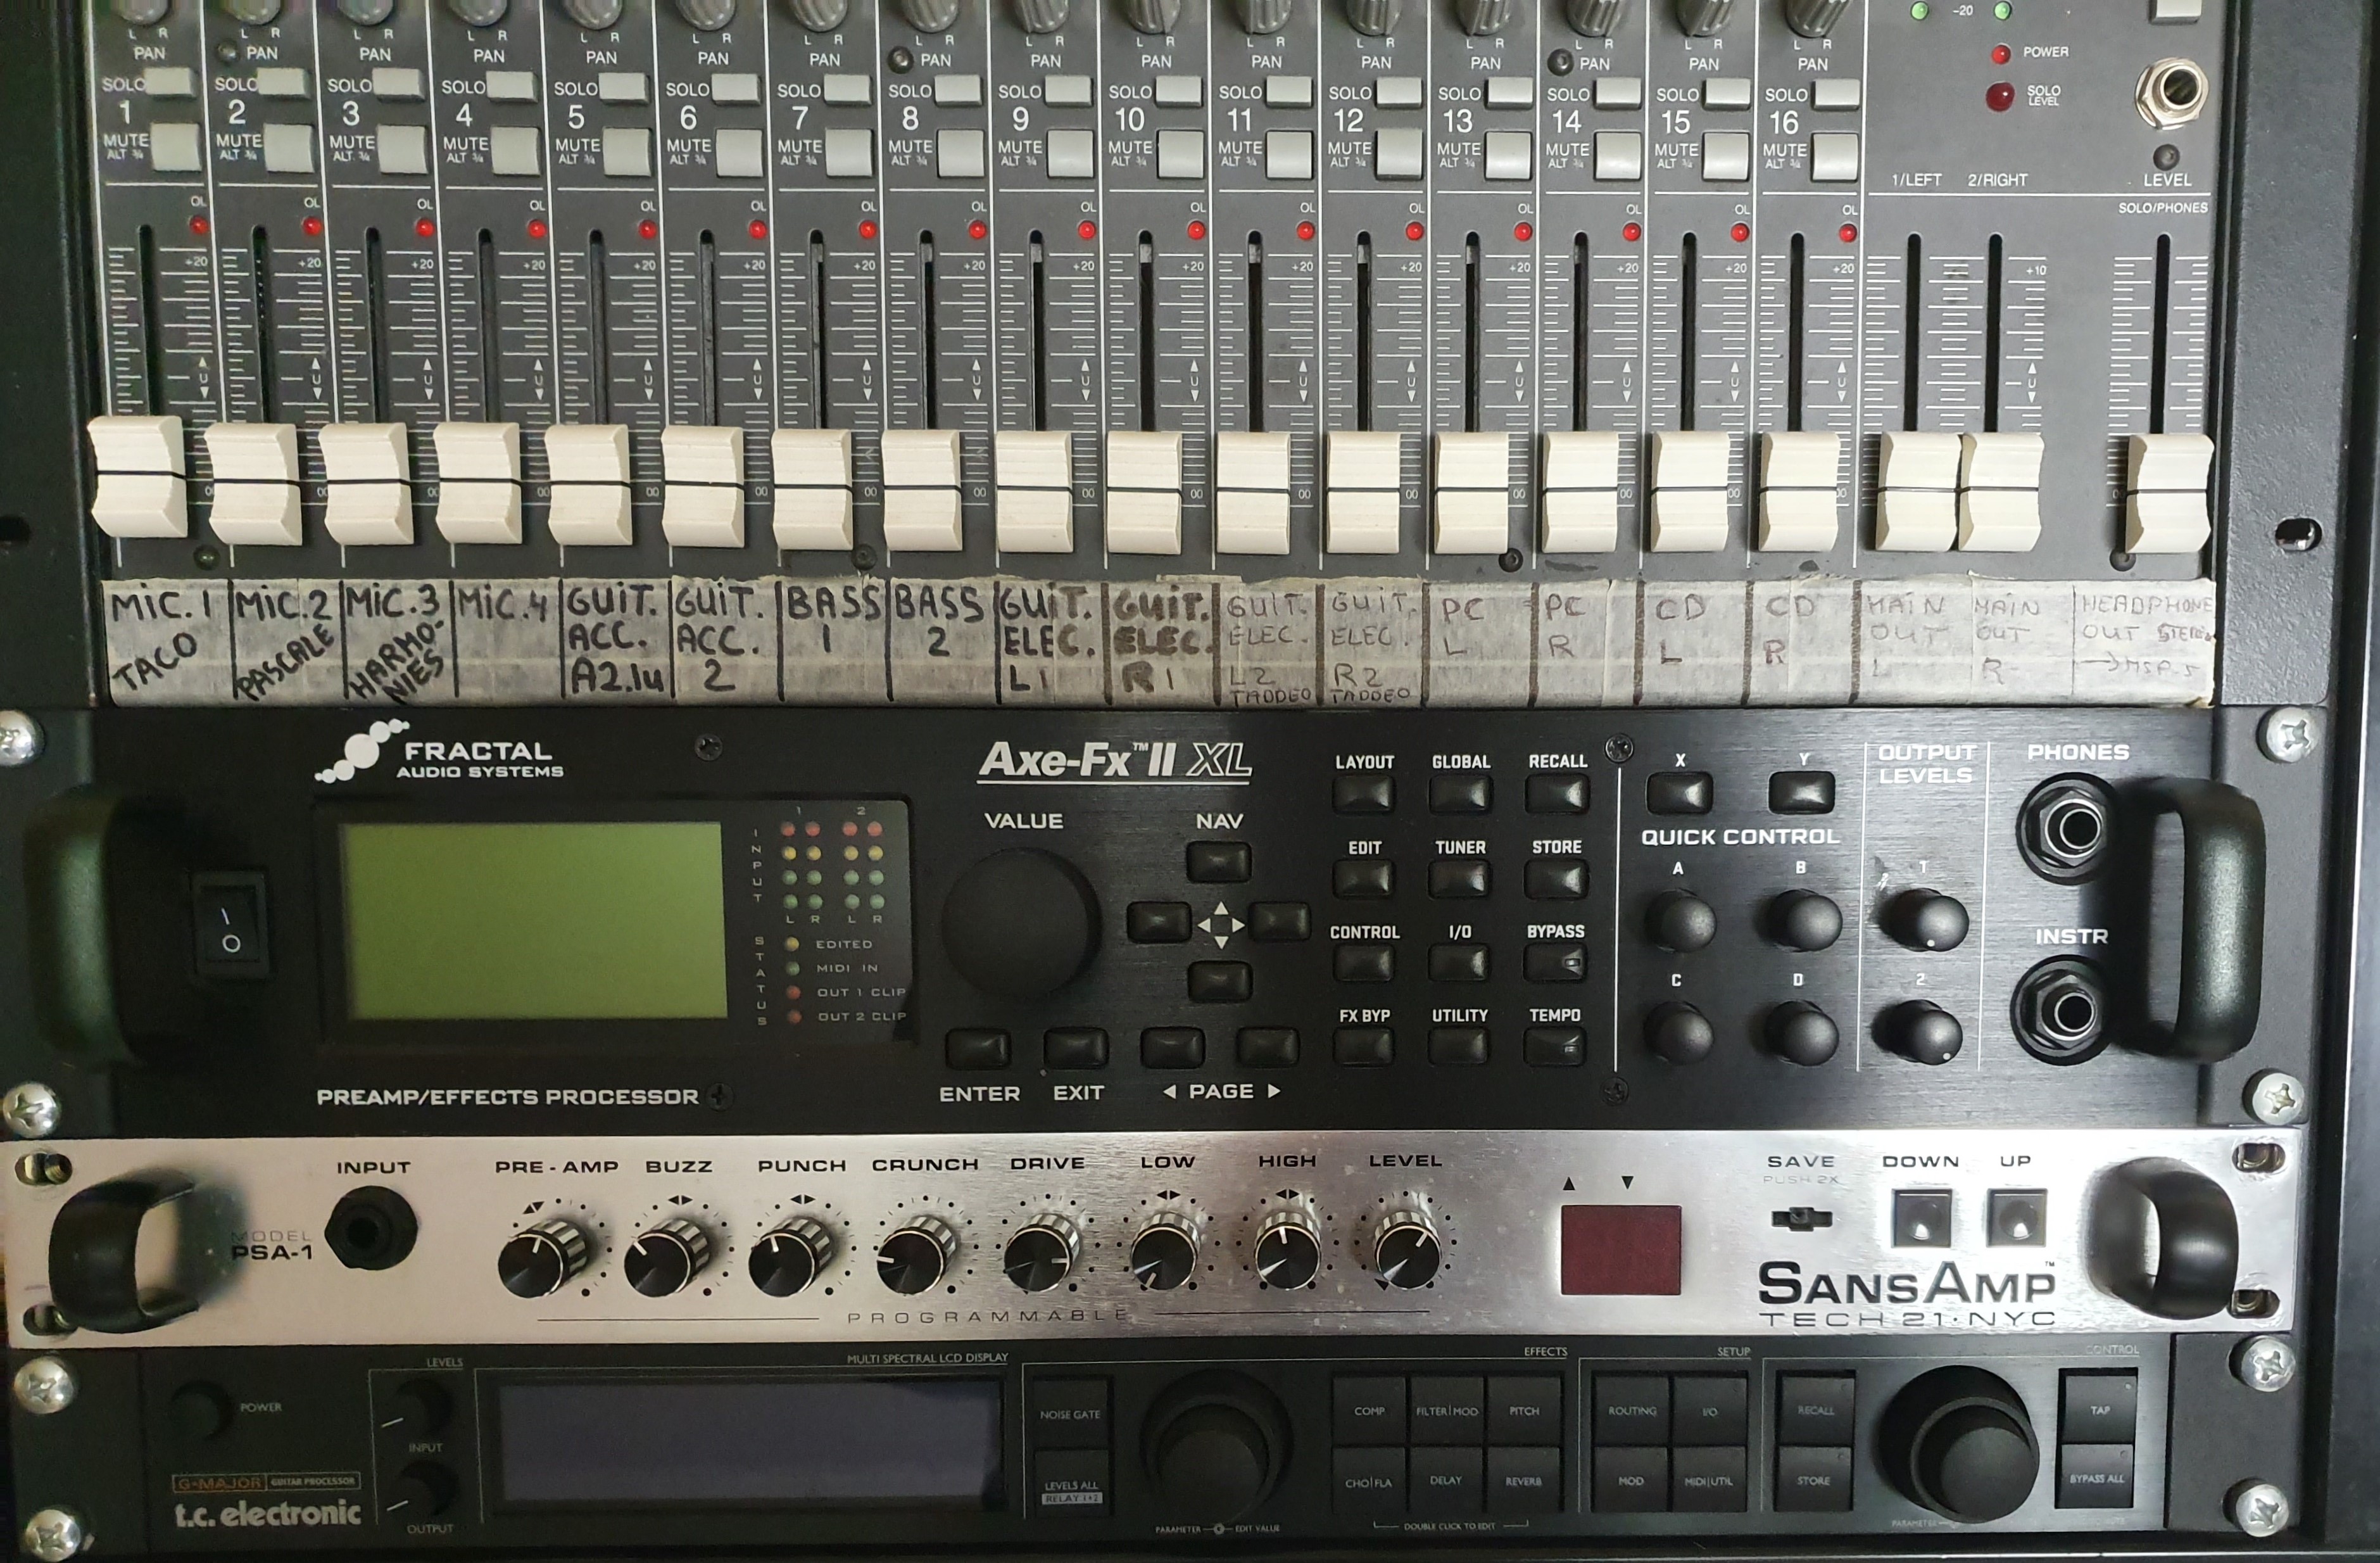 Axe-Fx II XL - Fractal Audio Systems Axe-Fx II XL - Audiofanzine